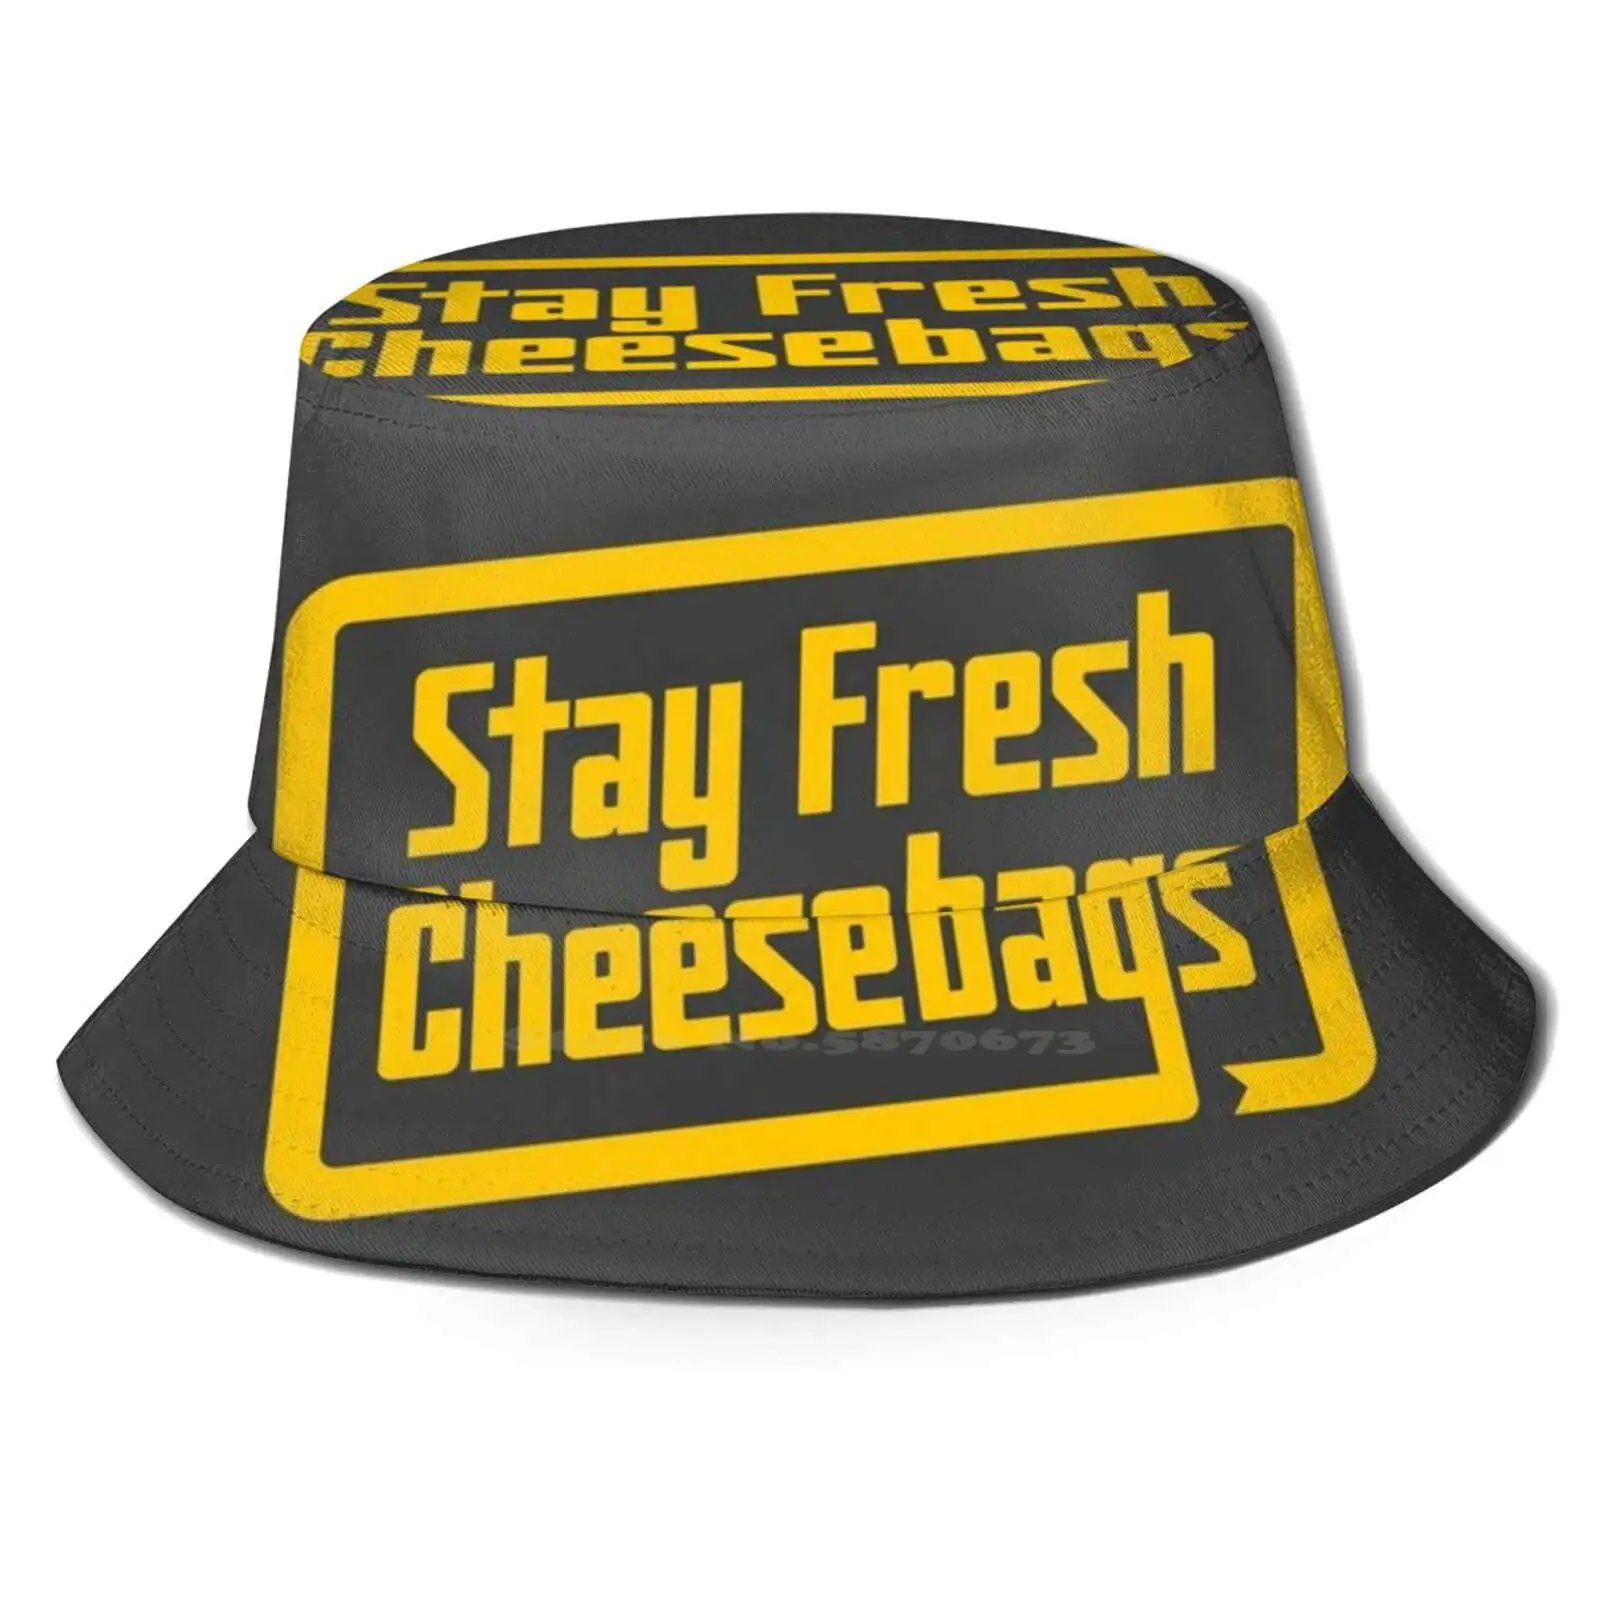 

Сырные пакеты Stay Fresh-ретро желтые на асфальте шляпы унисекс рыбака шапка доблестные усилия сборка типография Tagline показать сыр